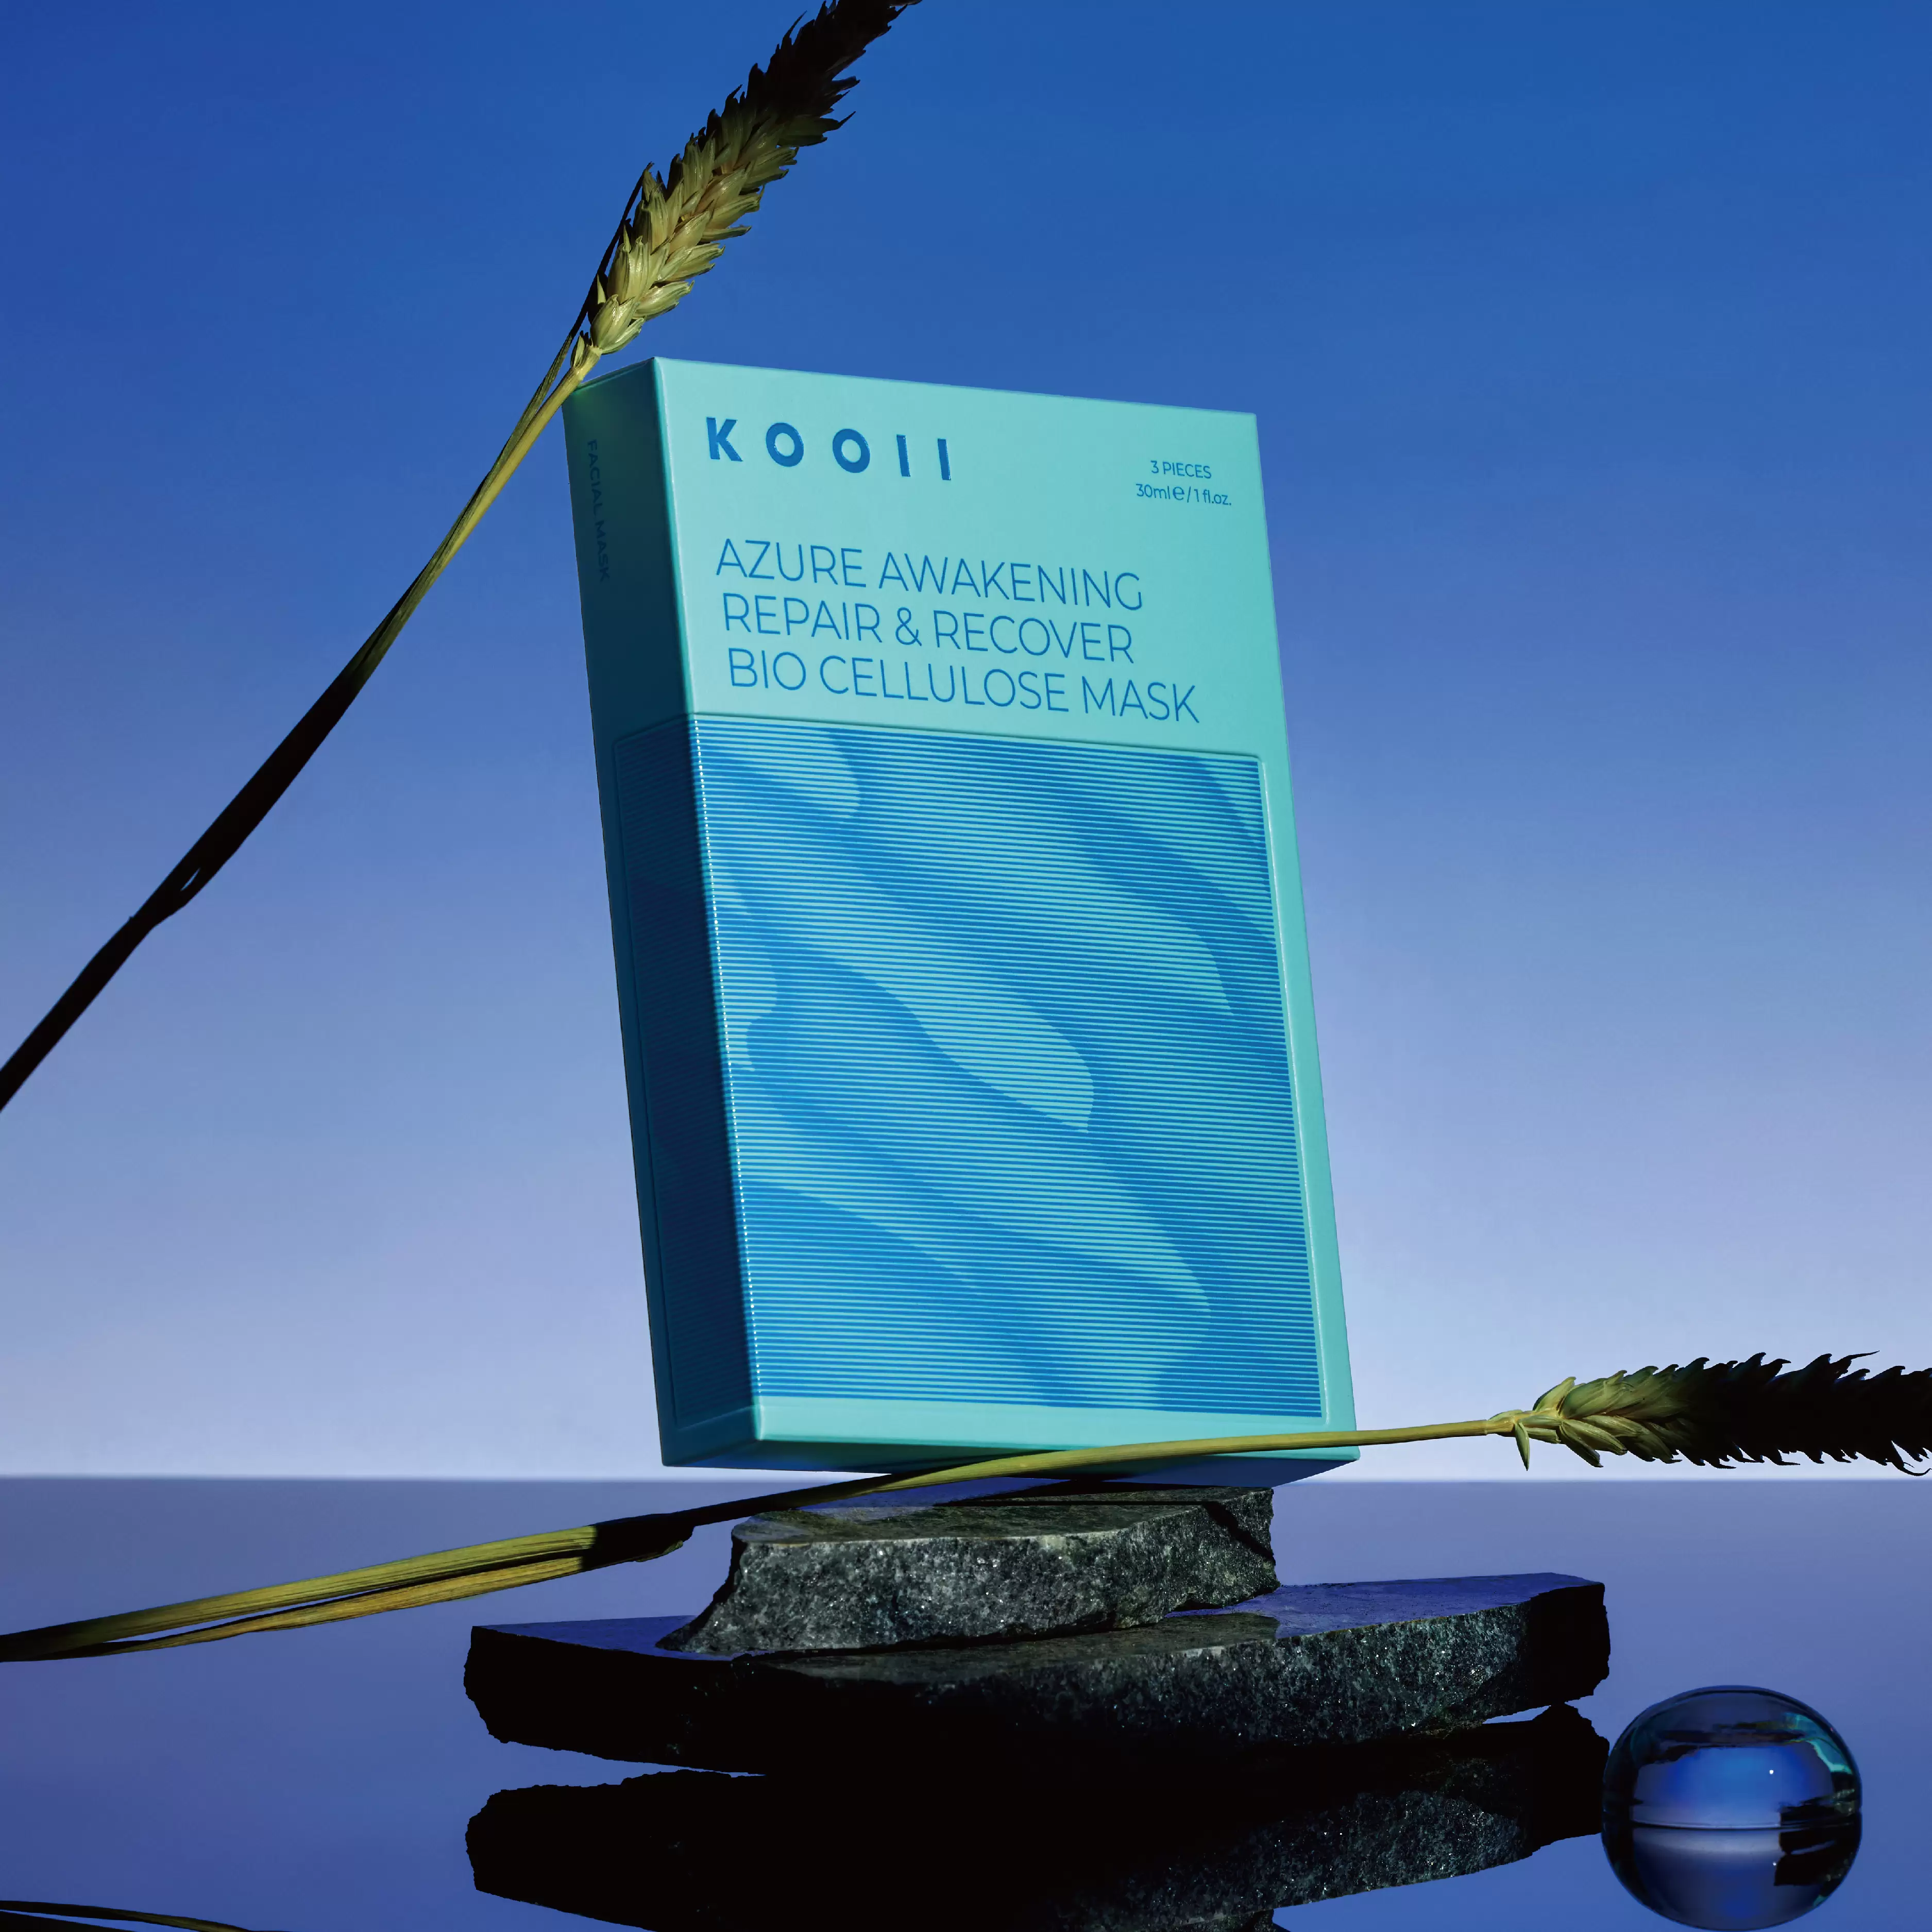 【KOOII】藍覺生物纖維水面具3片入盒裝,保養櫃裡最溫柔的存在,k20220907,【KOOII】藍覺生物纖維水面具3片入盒裝,所有商品,密集修護